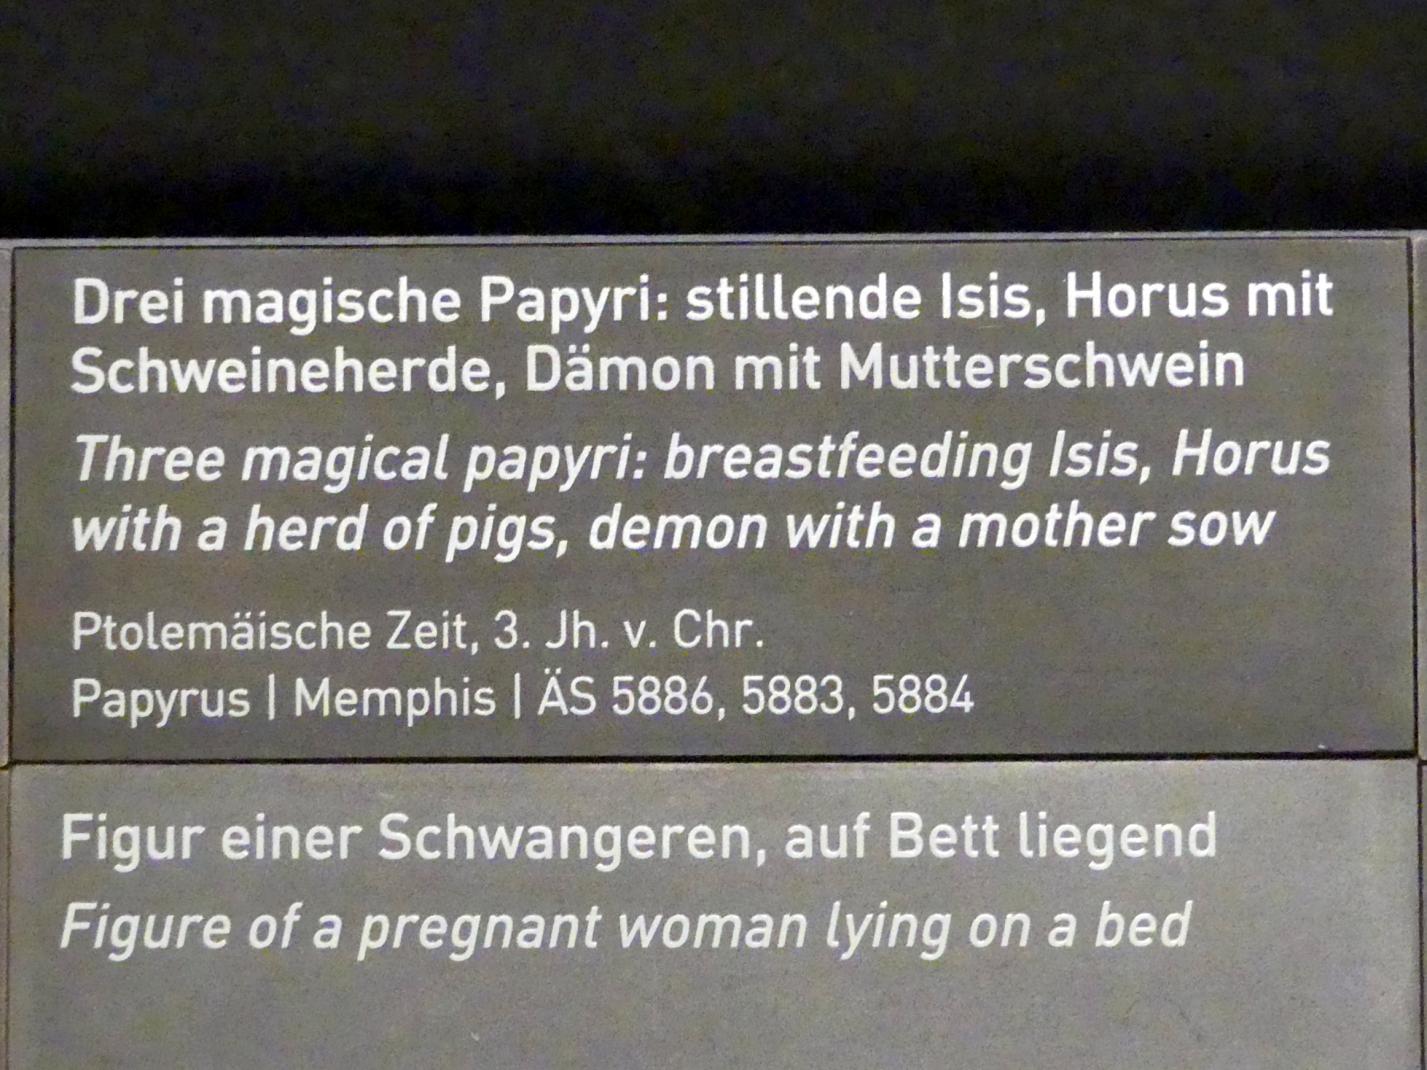 Drei magische Papyri: stillende Isis, Horus mit Schweineherde, Dämon mit Mutterschwein, Ptolemäische Zeit, 400 v. Chr. - 1 n. Chr., 300 - 200 v. Chr., Bild 5/5